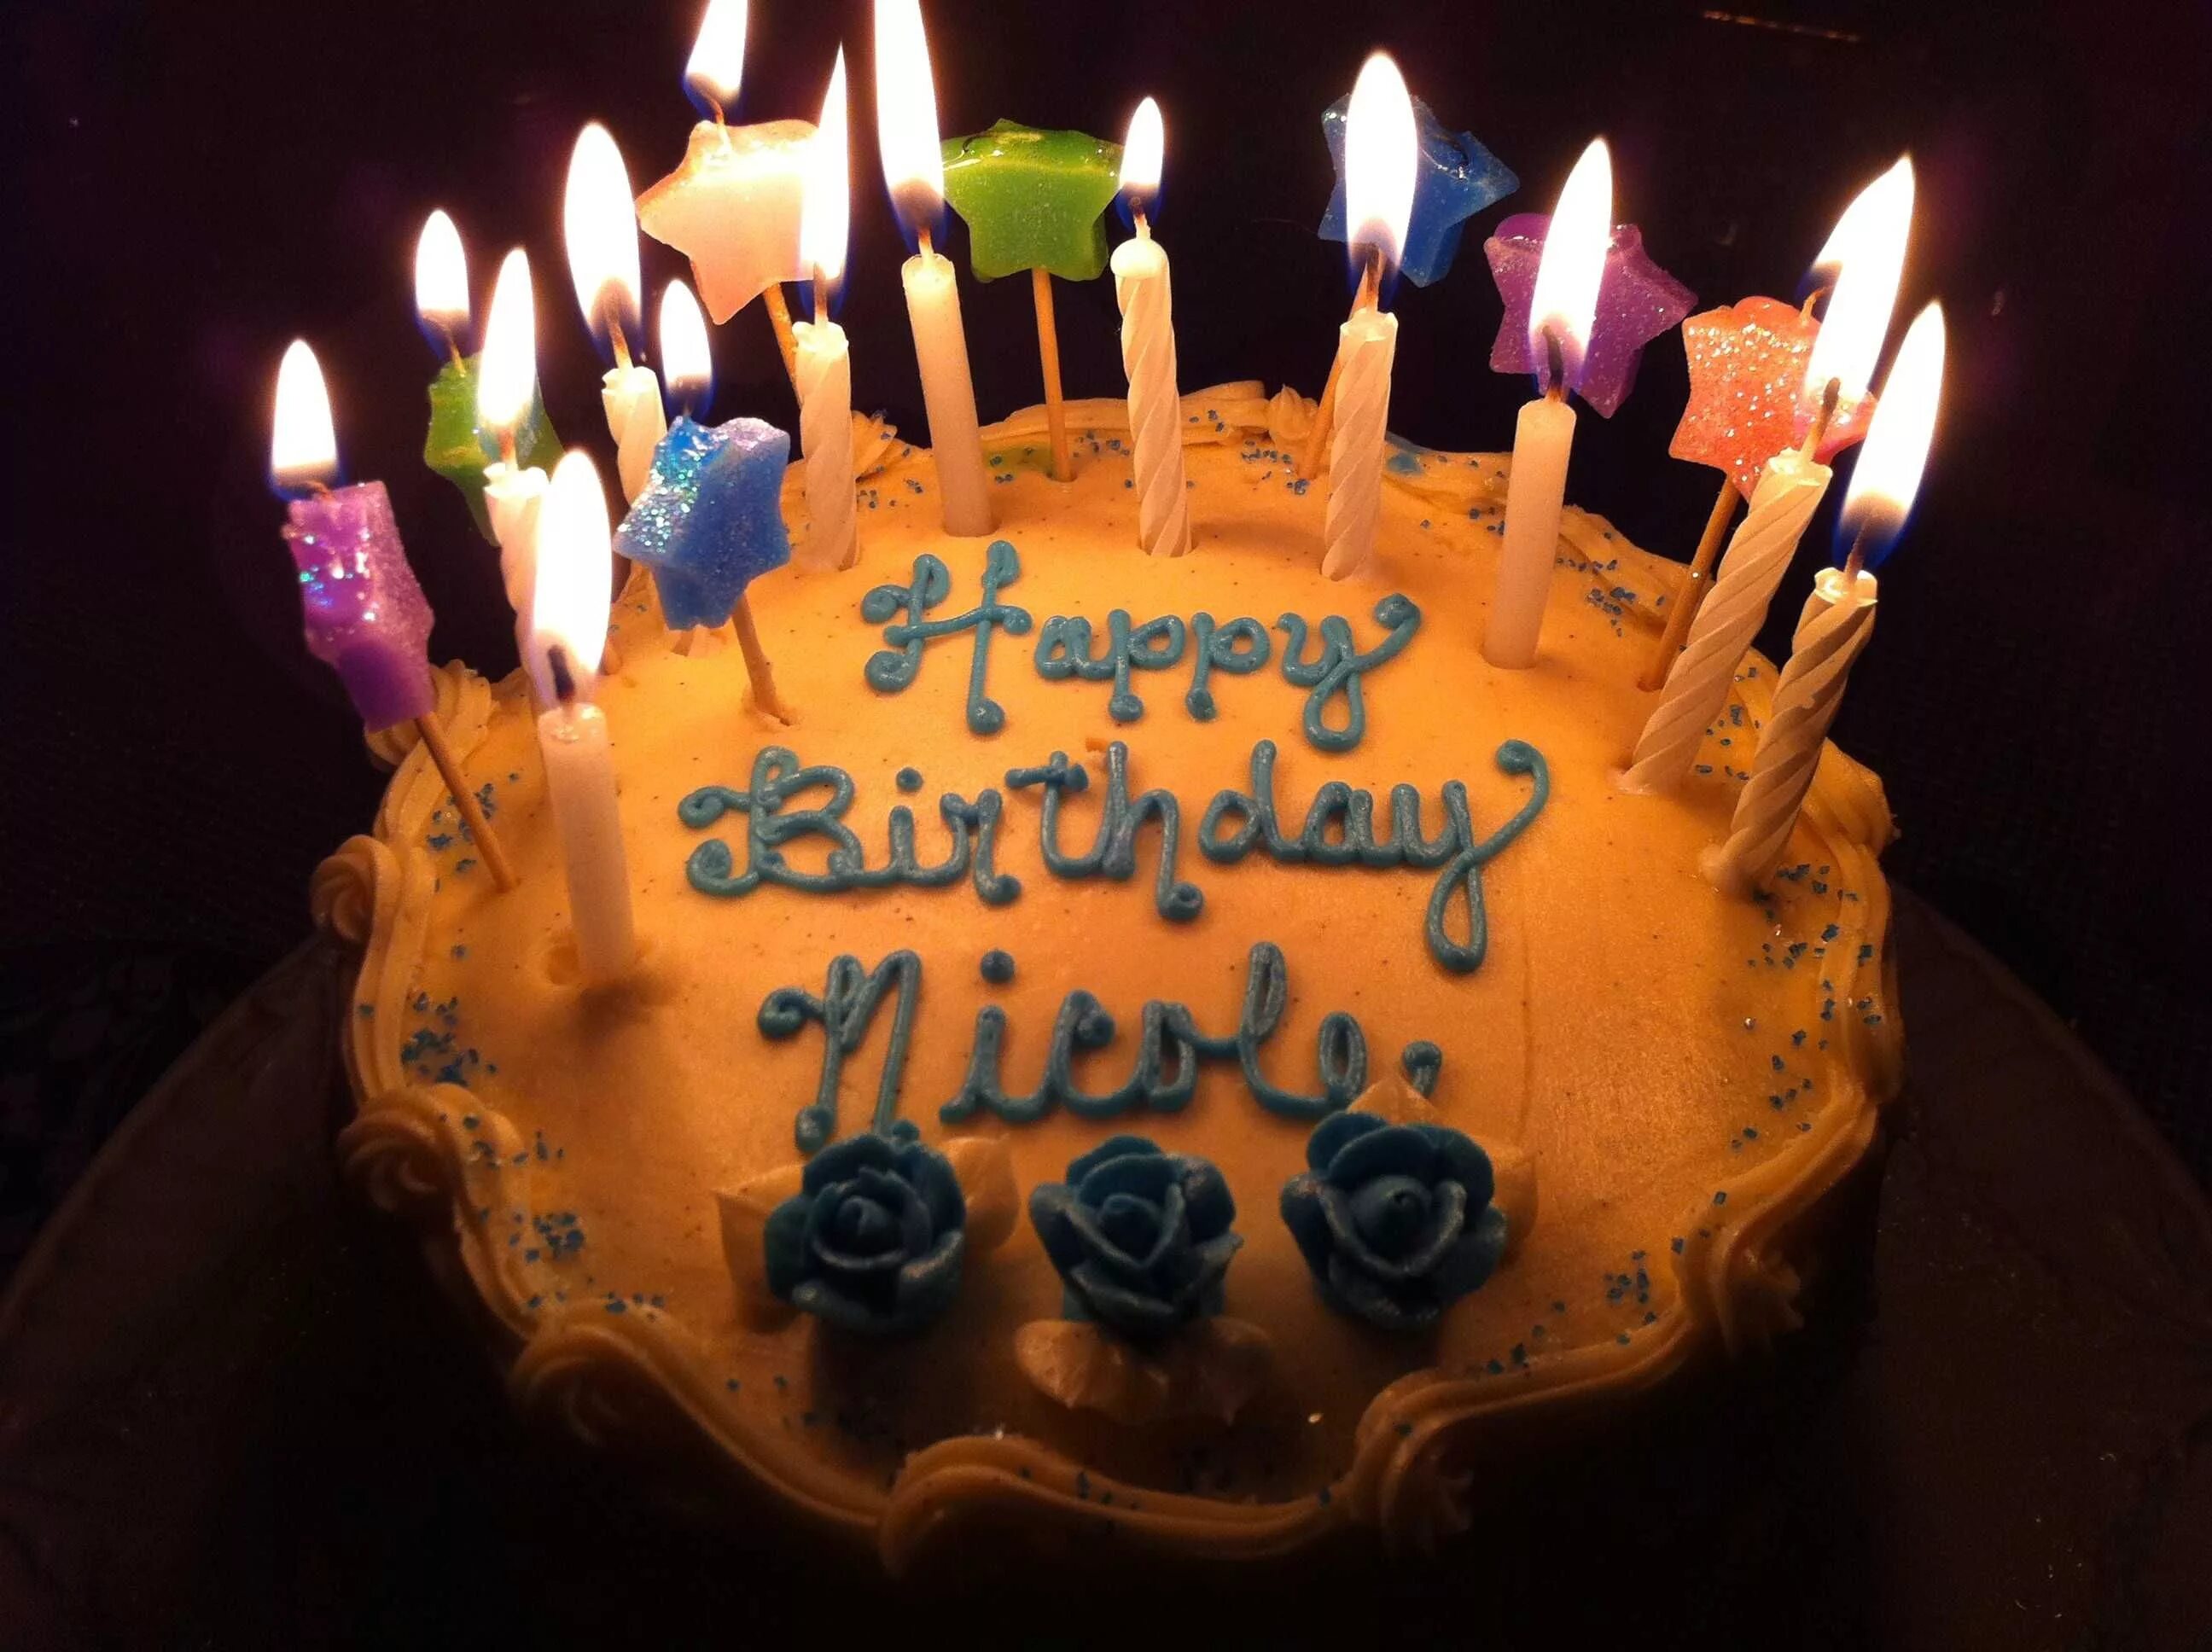 Tinubu birthday. Торт с днем рождения!. Праздничный торт на день рождения. Свечи для торта. Открытка с днём рождения торт.